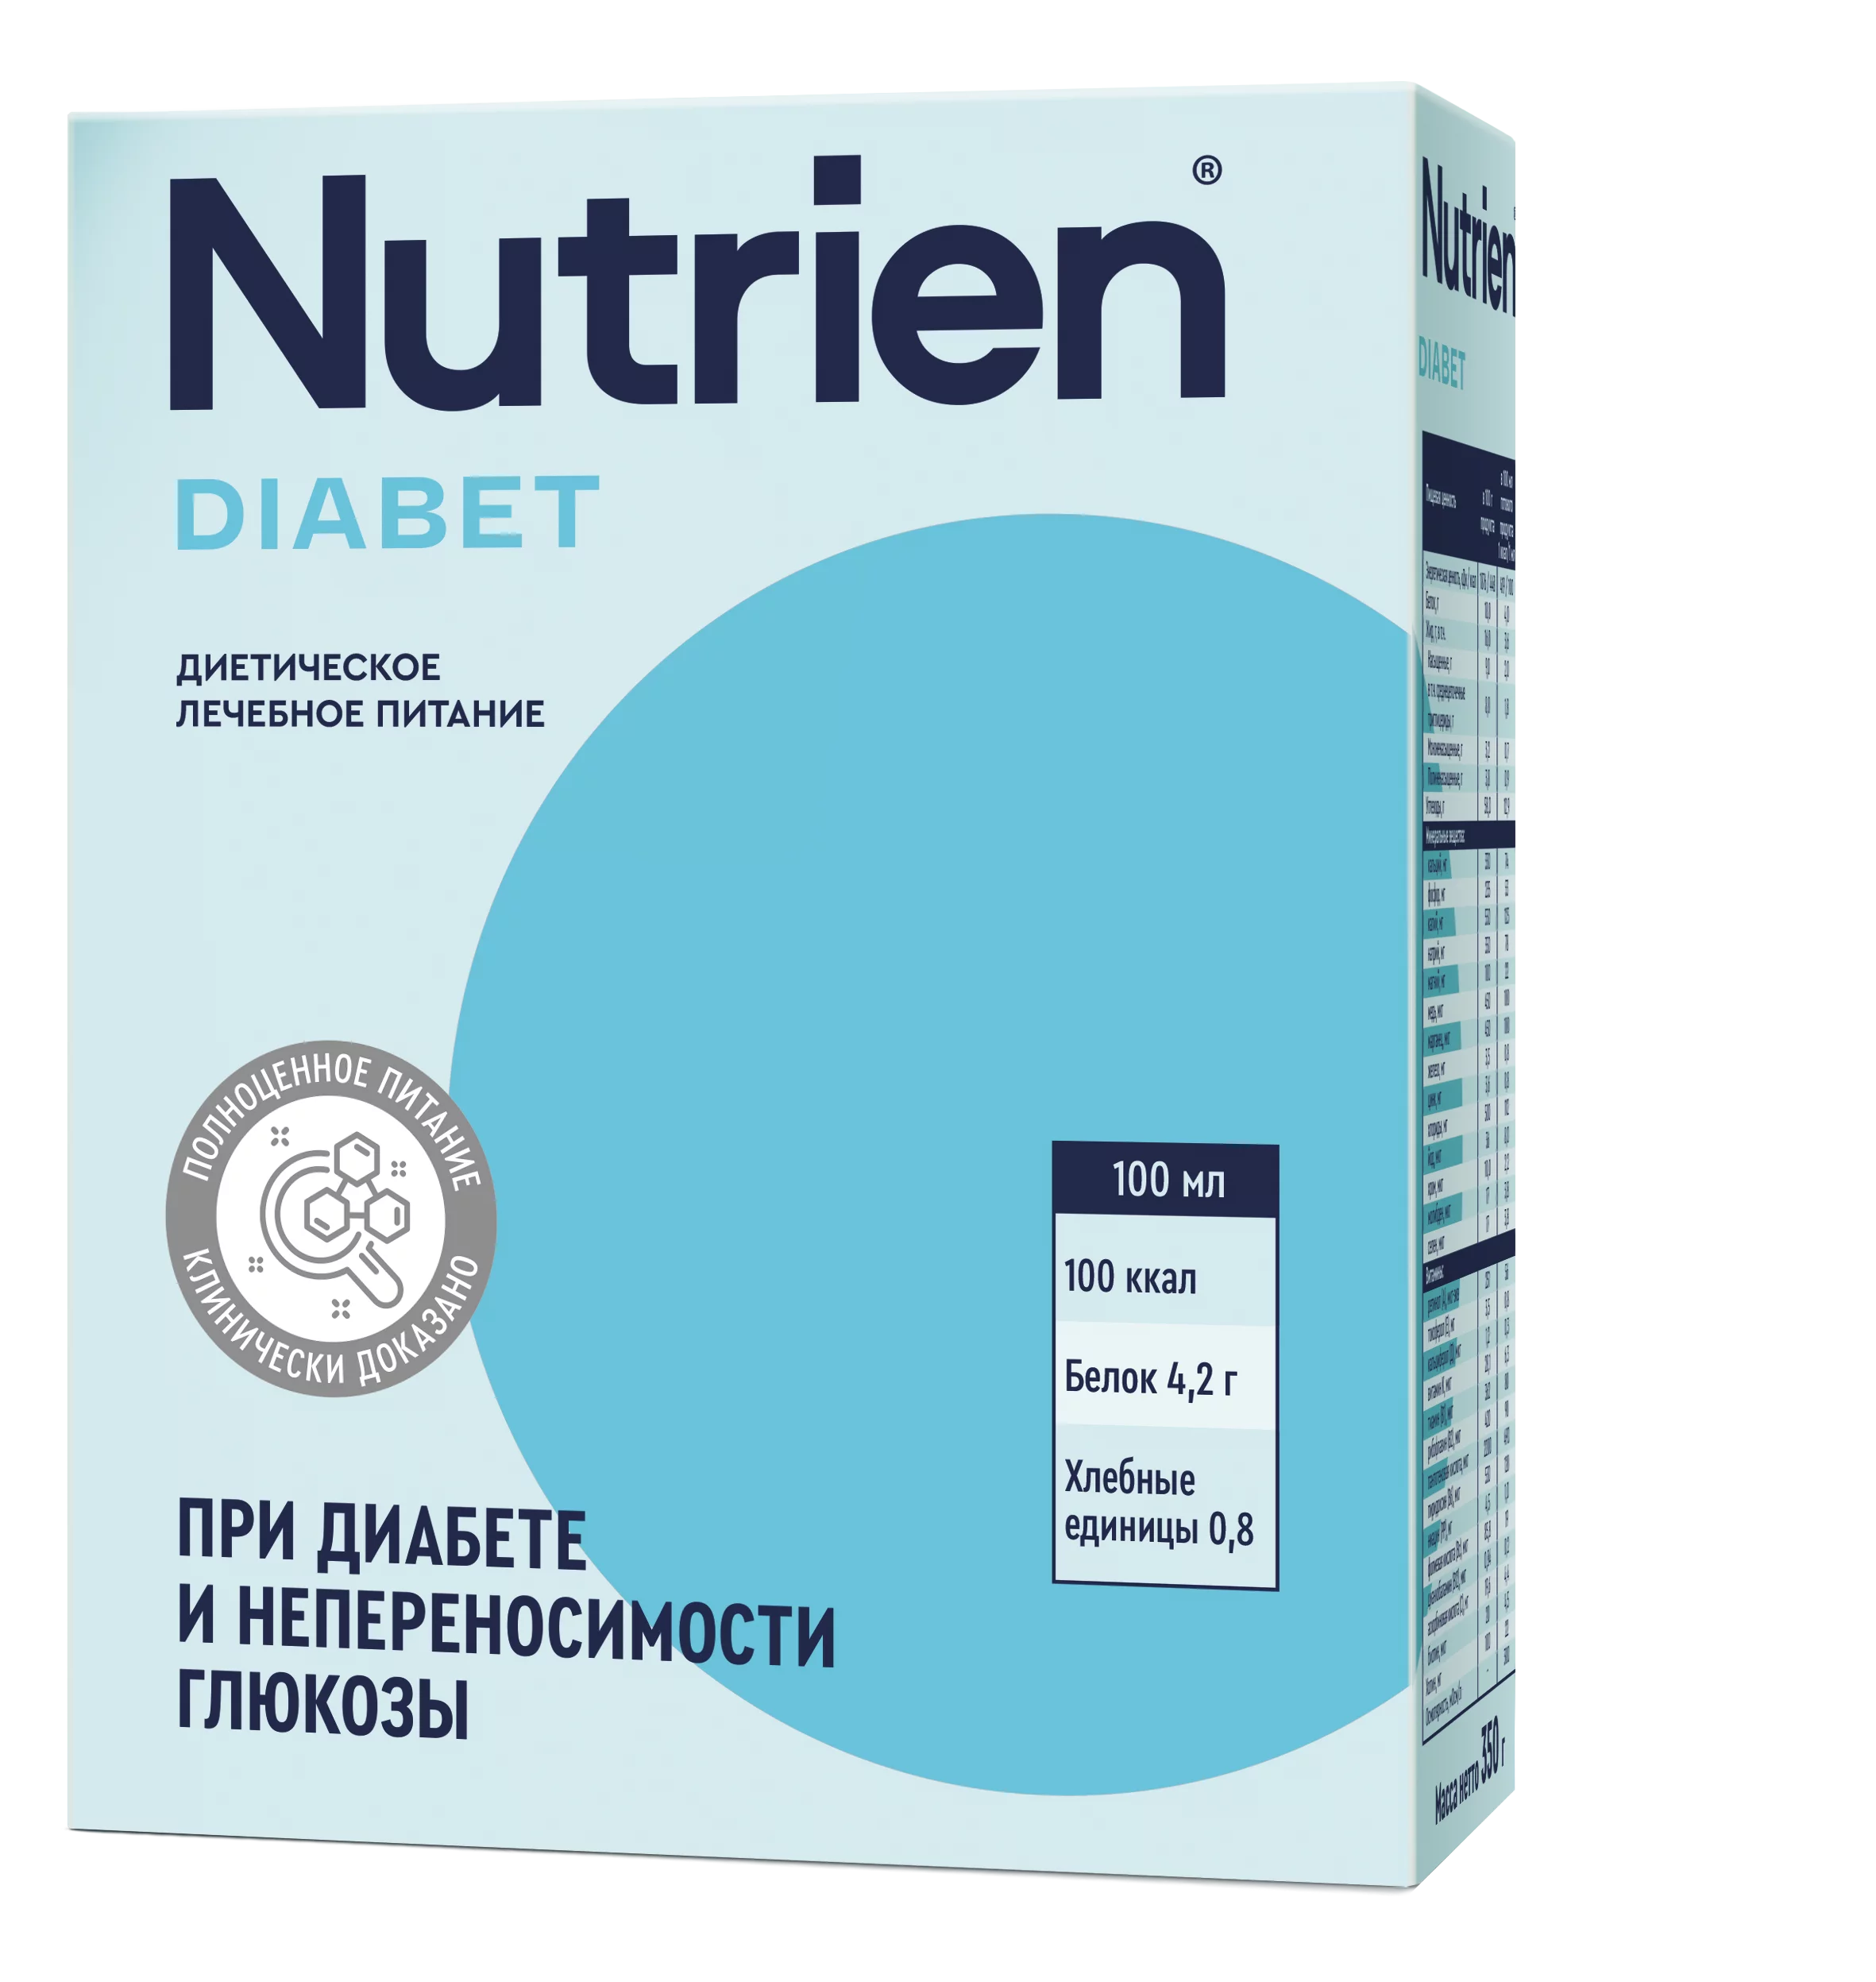 Nutrien Diabet - 6